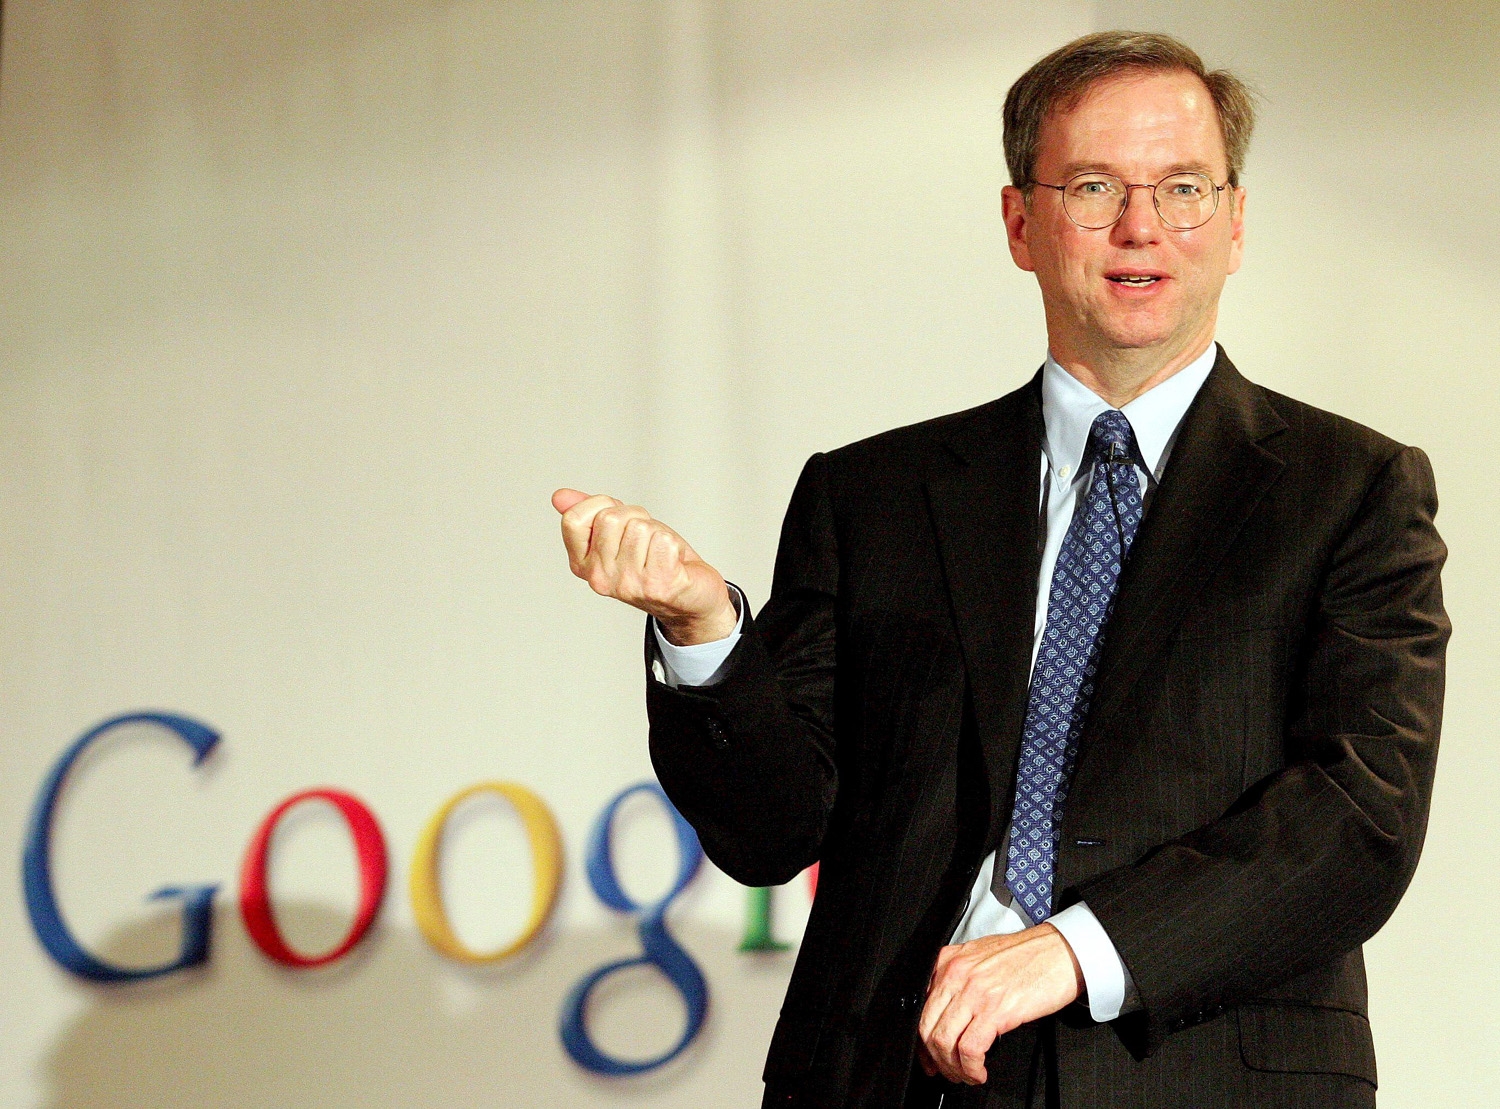 Eric Schmidt - cựu CEO của Google, có một điều không thể bỏ qua khi nhắc đến thành công của một người: Sự may mắn